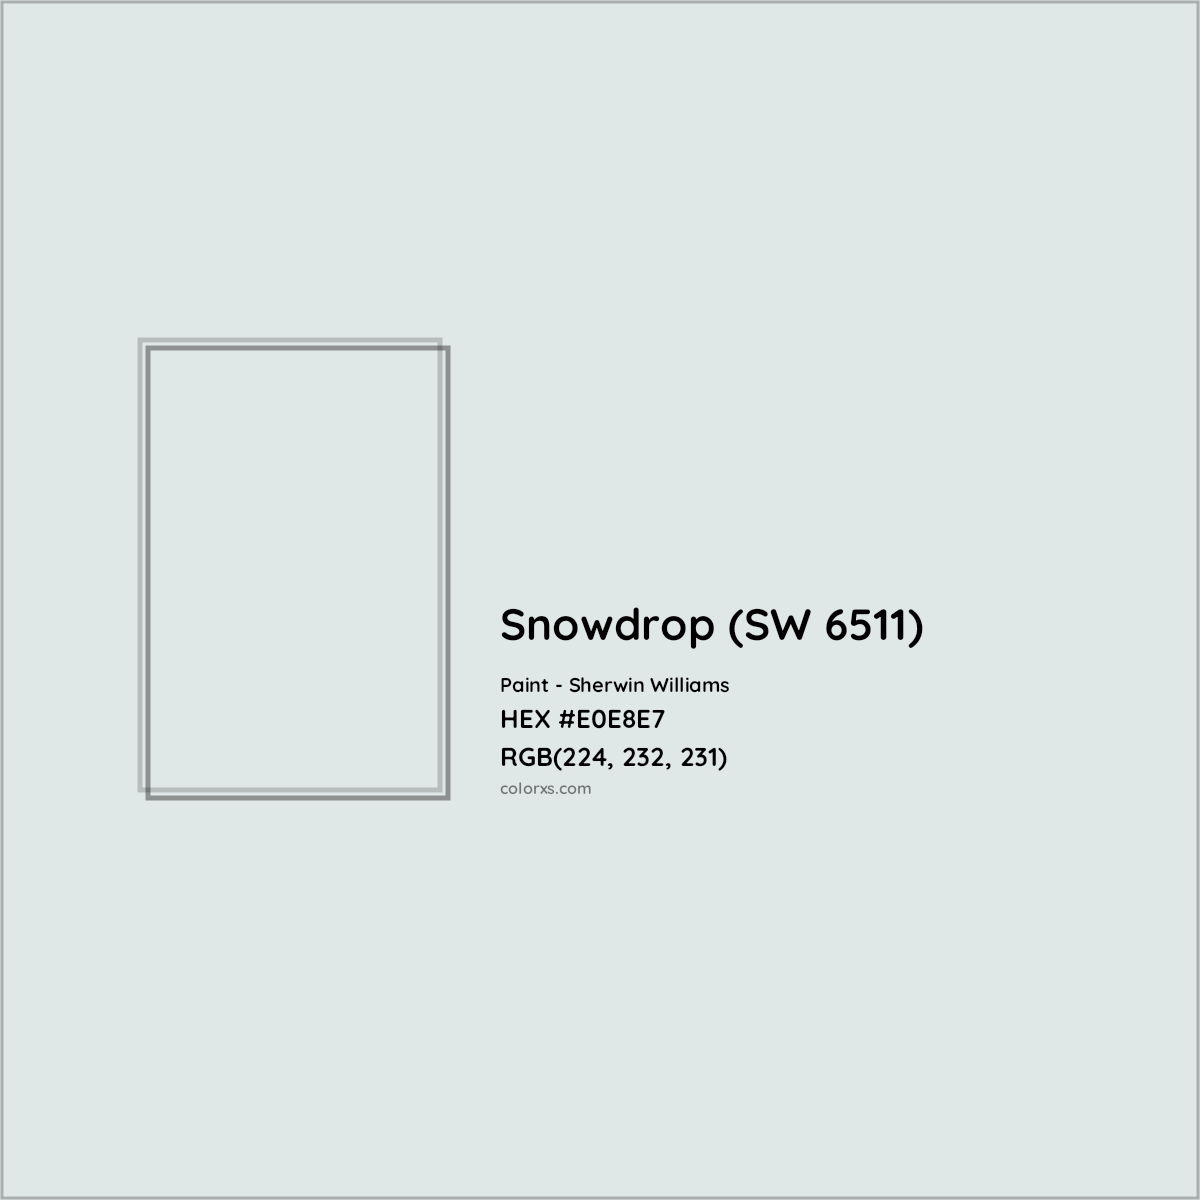 HEX #E0E8E7 Snowdrop (SW 6511) Paint Sherwin Williams - Color Code